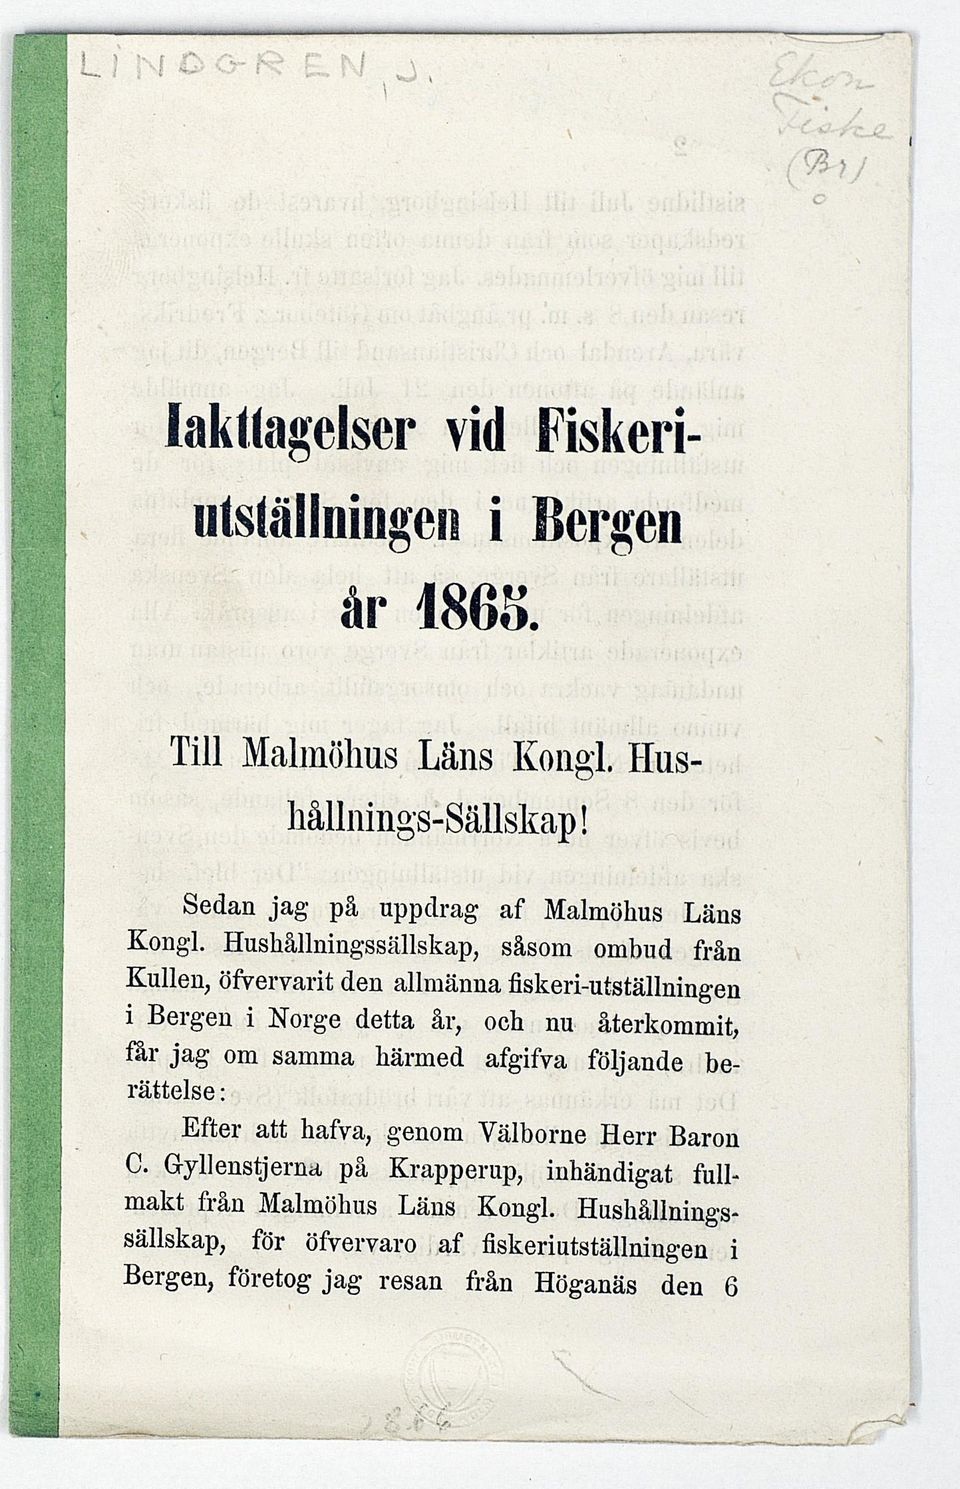 Hushållningssällskap, såsom ombud från Kullen, öfvervarit den allmänna fiskeri-utställningen i Bergen i Norge detta år, och nu återkommit, får